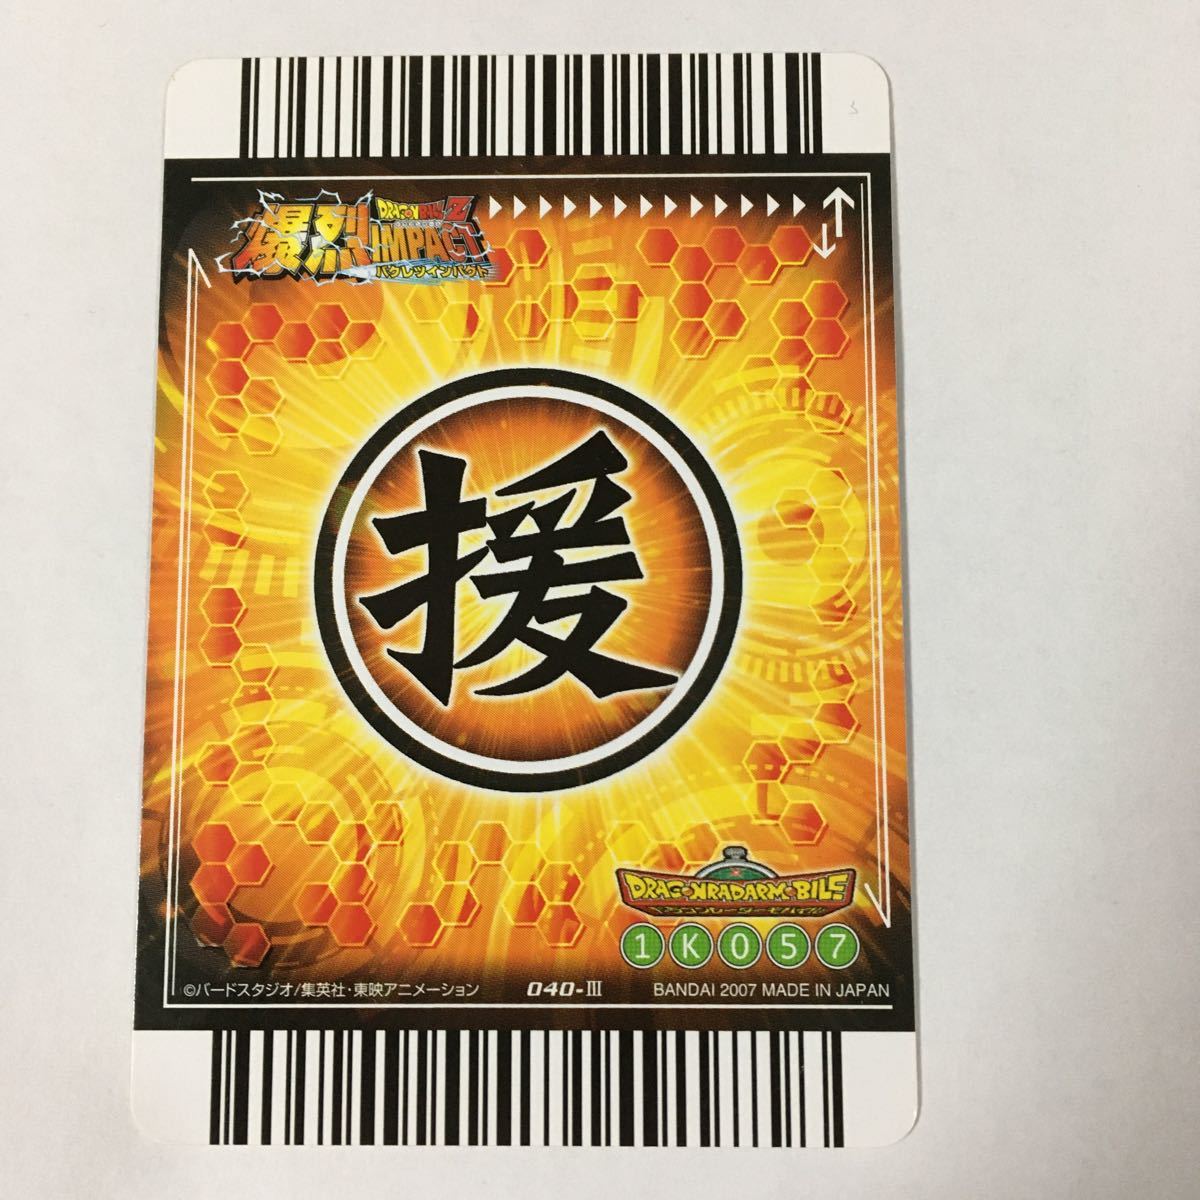 ドラゴンボールZ爆裂インパクト データカードダス 超カードゲーム 040-Ⅲザーボン 変身 2007年 当時物 カードダス(ドラゴンボール